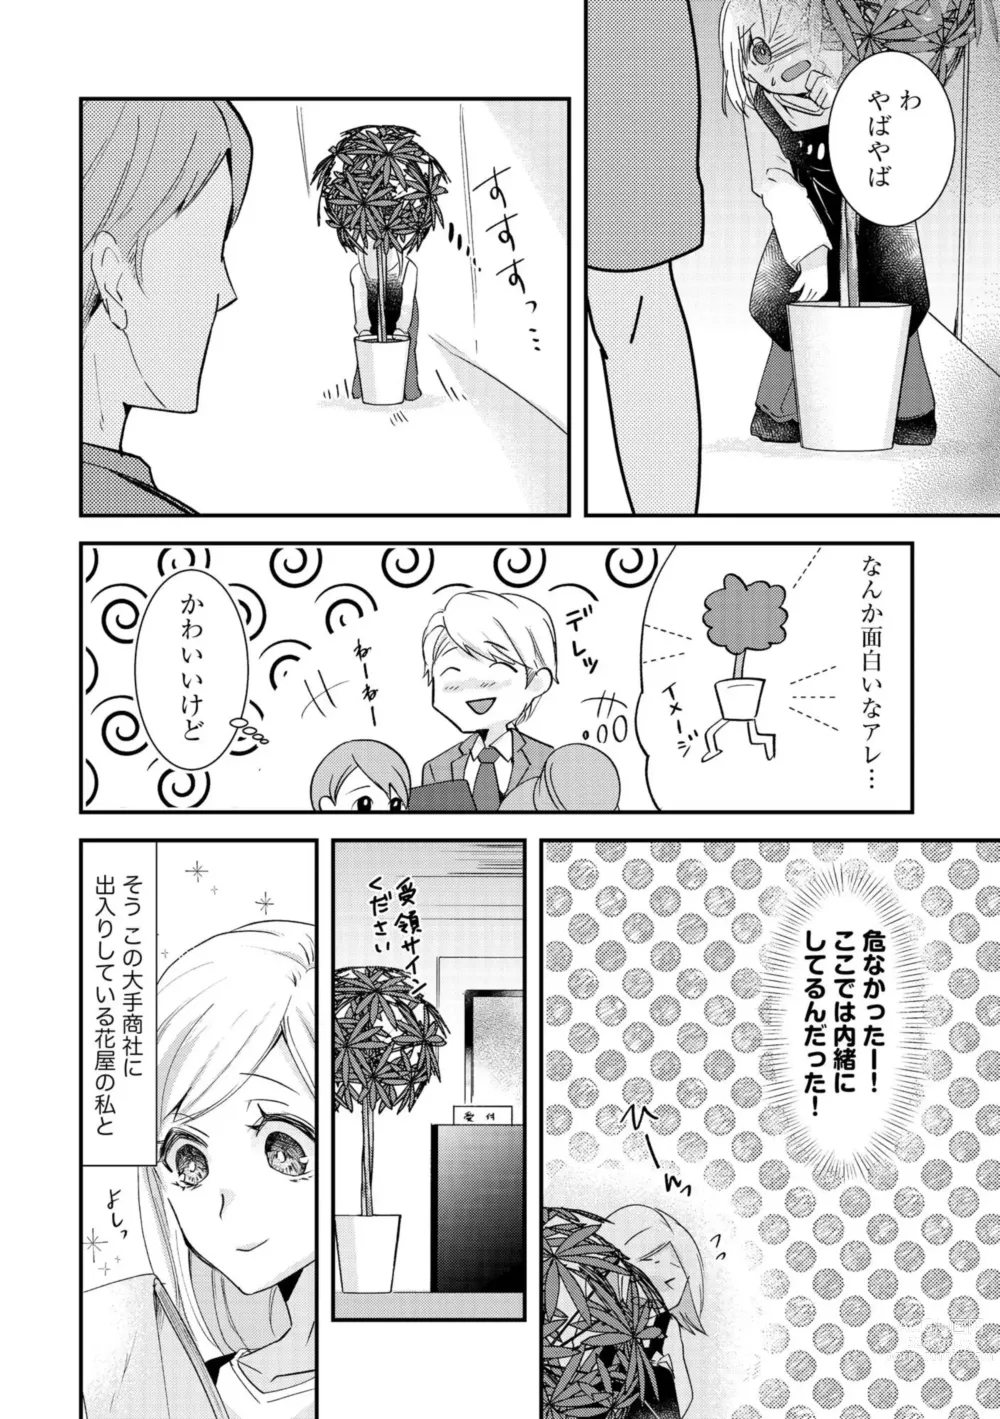 Page 4 of manga Karada Kakusa 40 cm no Amaicha Ressun XL-kyū no Okkina Are de Okumade Guriguri 1